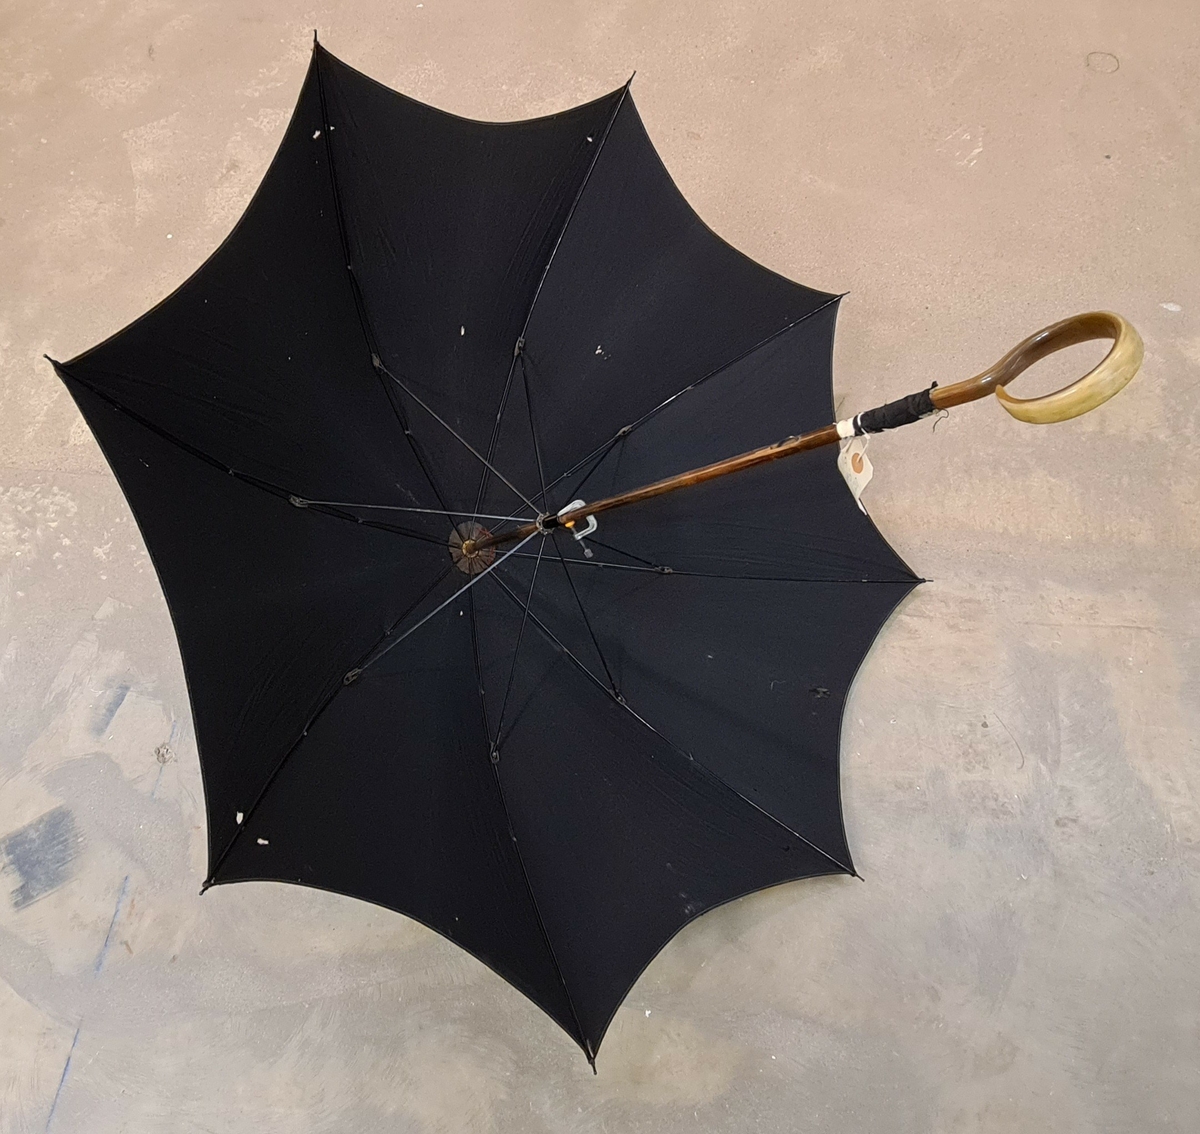 Paraply/parasoll i svart tyg. Krycka i en ring formation.

Ingår i en samling av nio olika parasoller med olika utseende och modell.